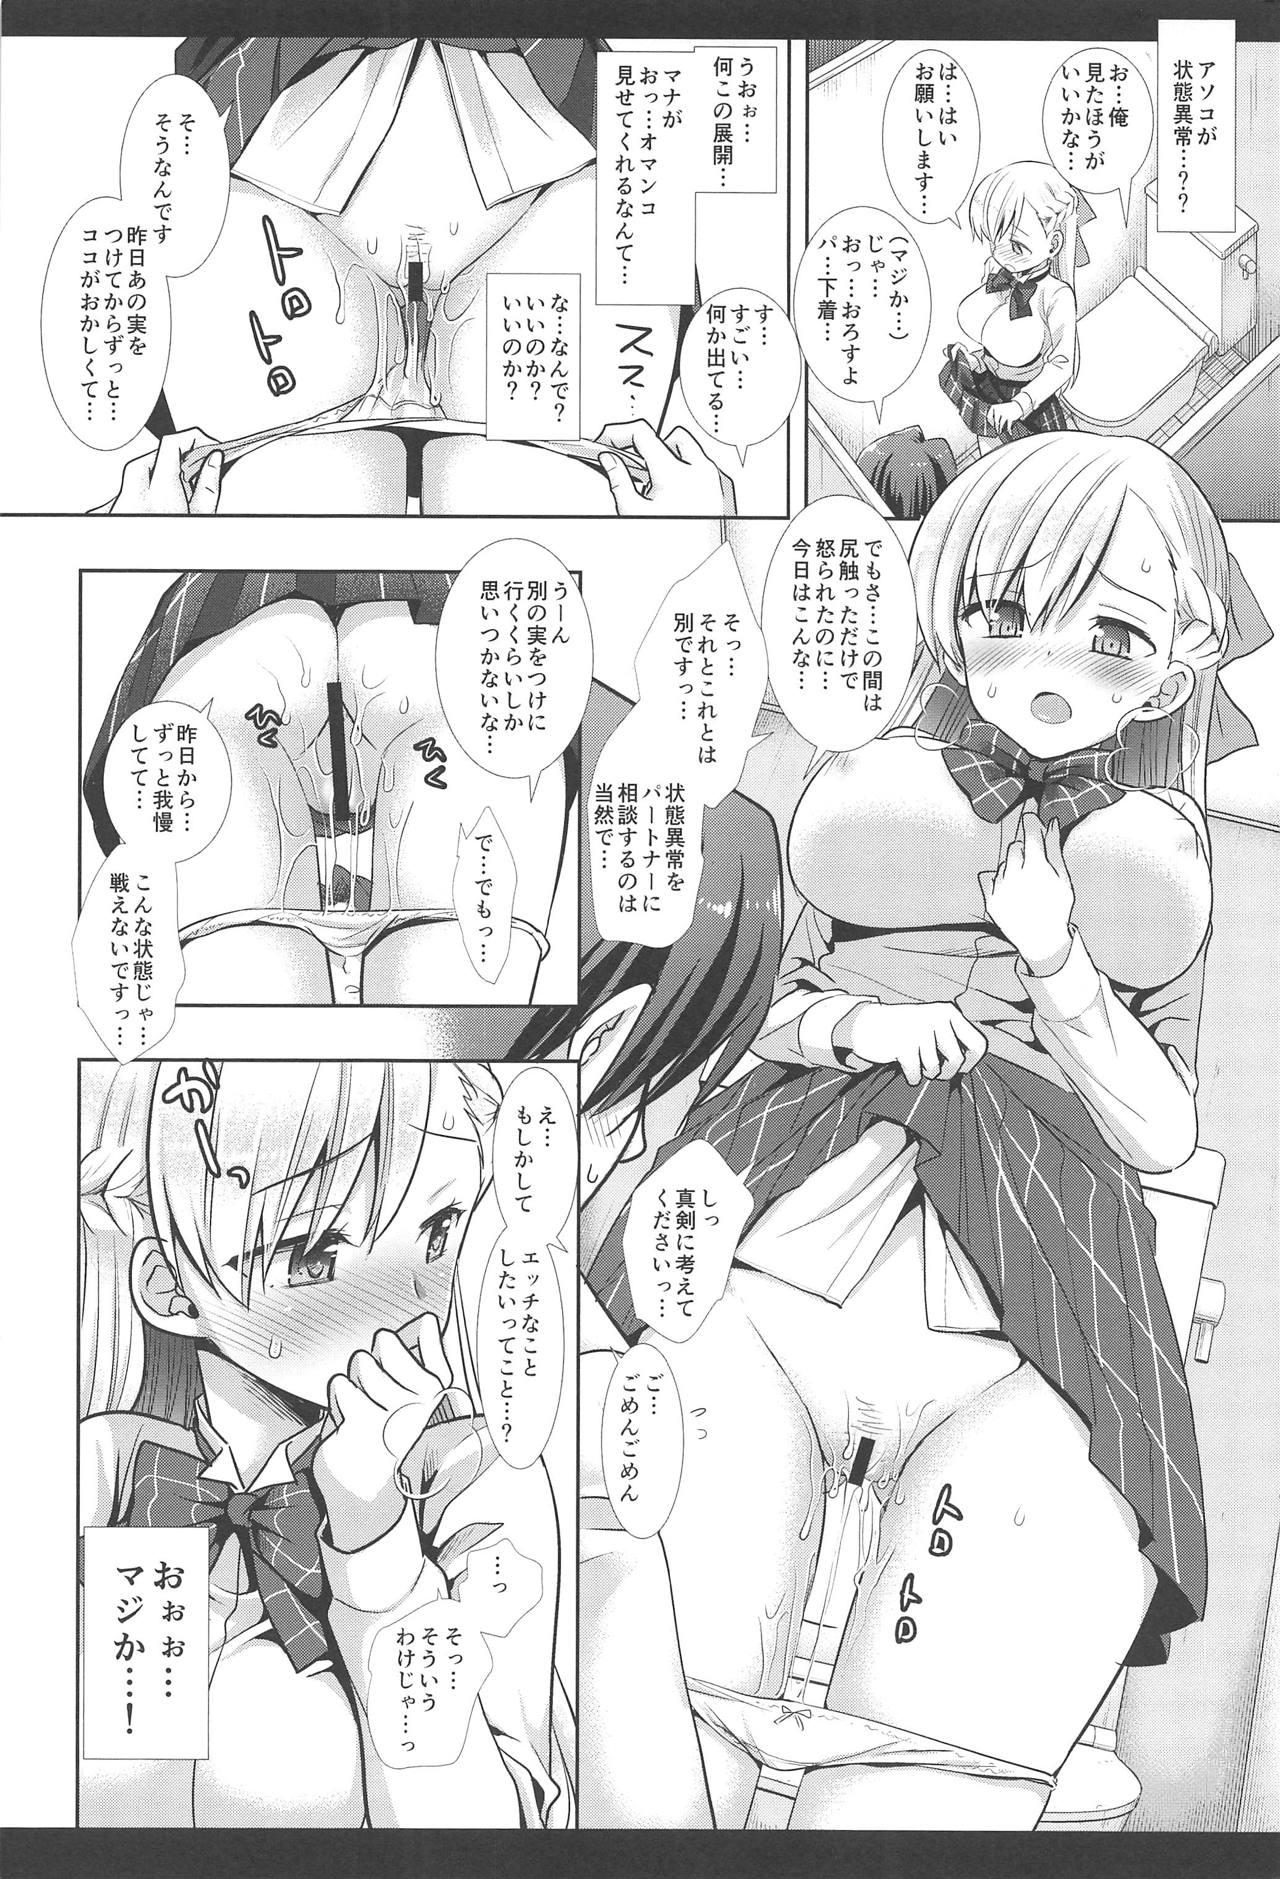 Sex Hatsujou no Mi Mana 1 - Monster strike Freeporn - Page 9